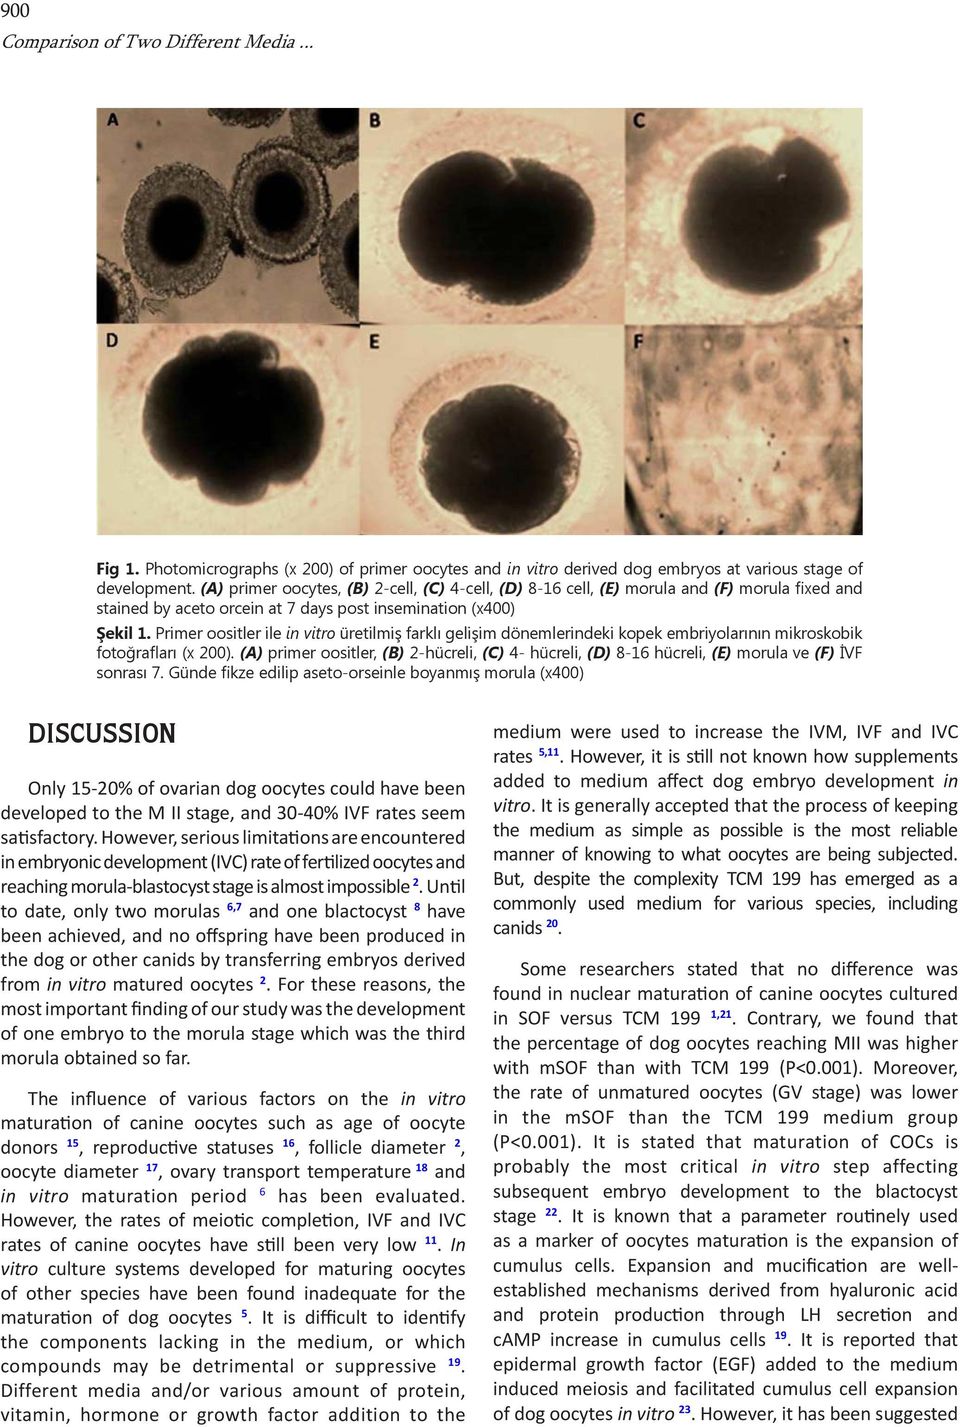 Primer oositler ile in vitro üretilmiş farklı gelişim dönemlerindeki kopek embriyolarının mikroskobik fotoğrafları (x 200).